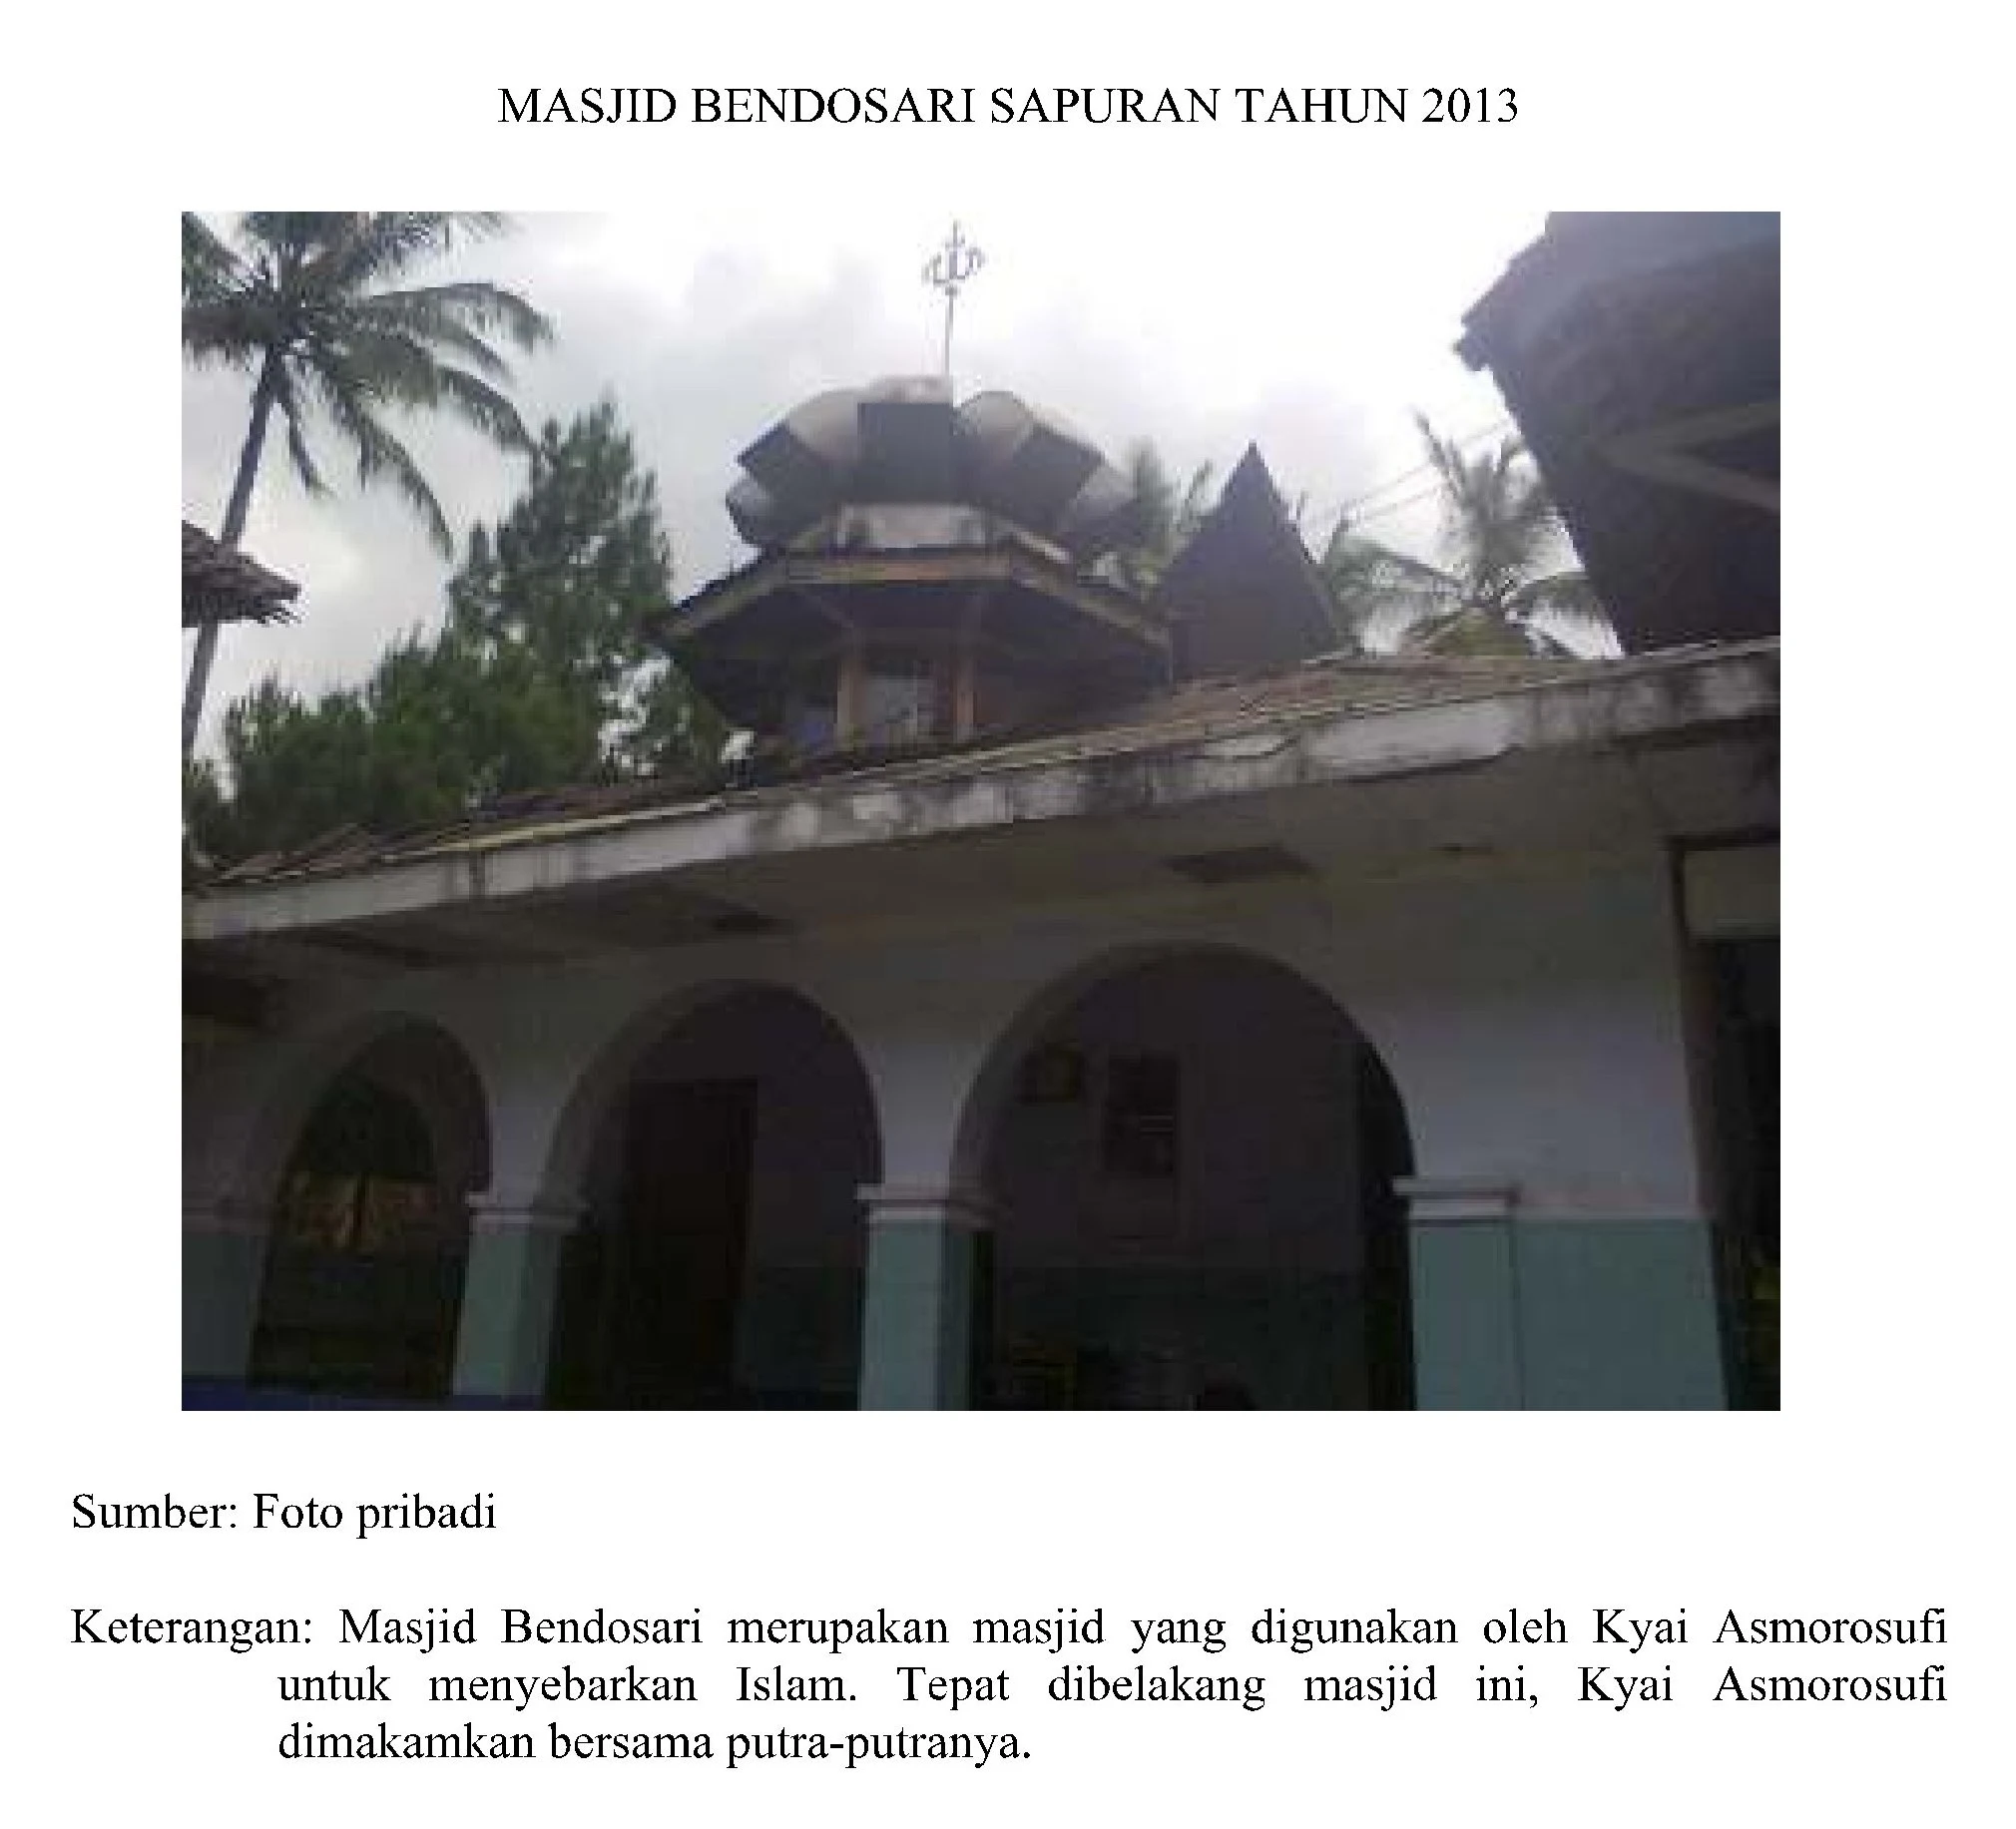 Makam KH. R. Asmorosufi dan KH. R. Ali Marhamah beserta keluarga terletak di sebelah barat Masjid Bendosari Sapuran